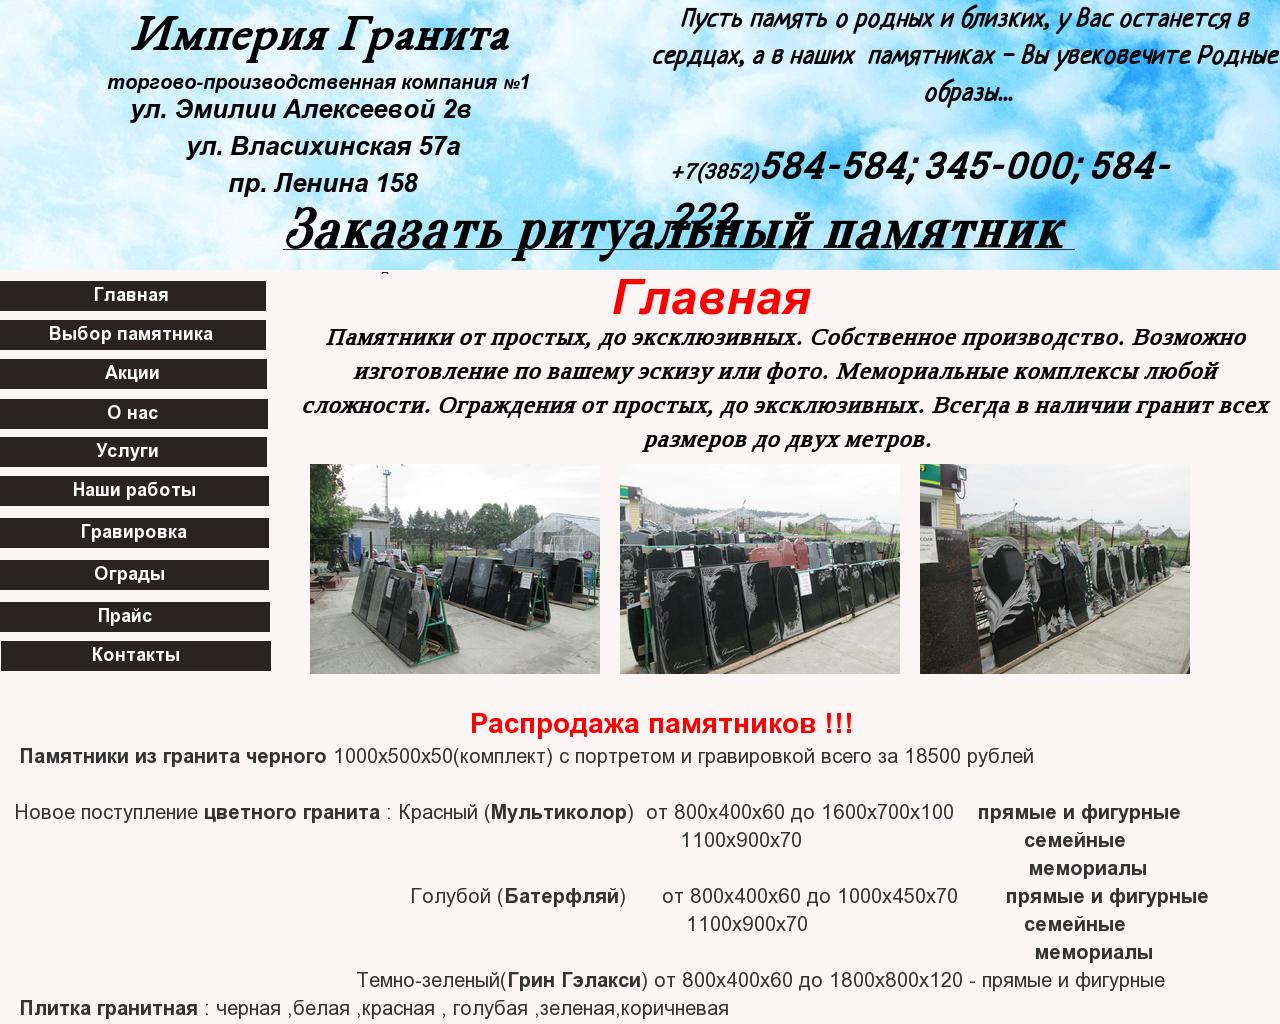 Изображение сайта pamyatnik22.ru в разрешении 1280x1024